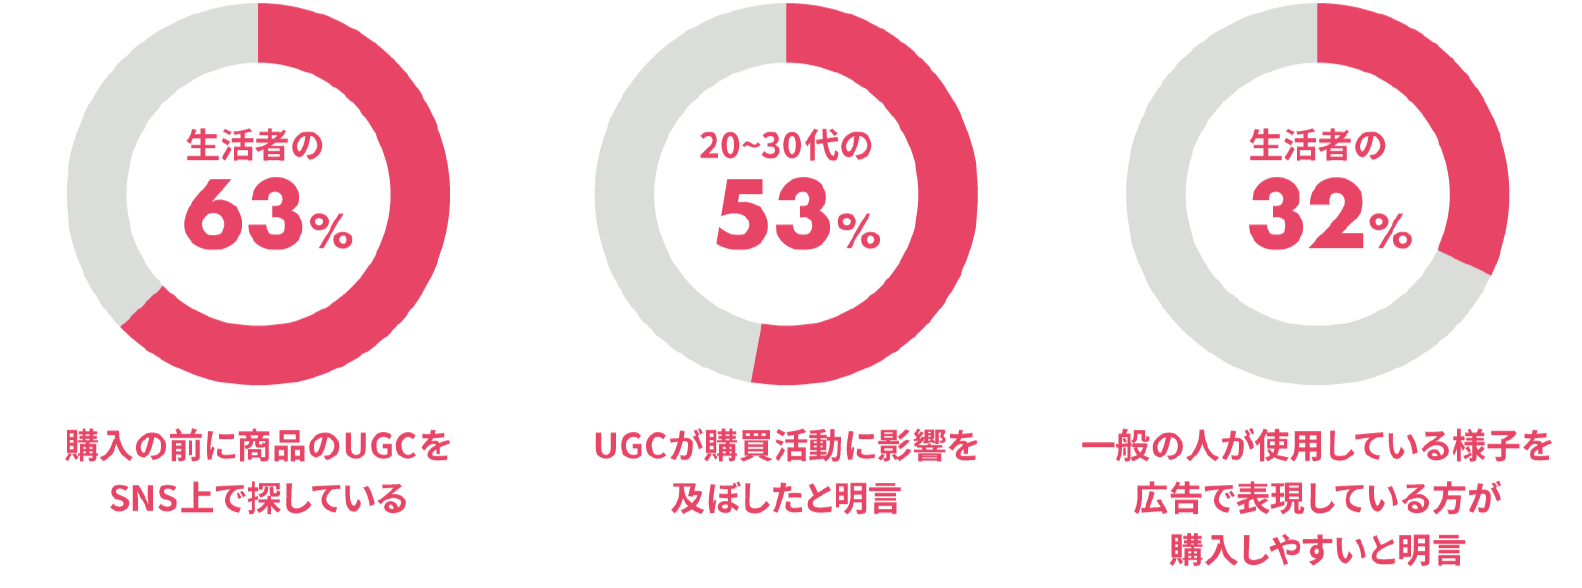 UGCに関する数値